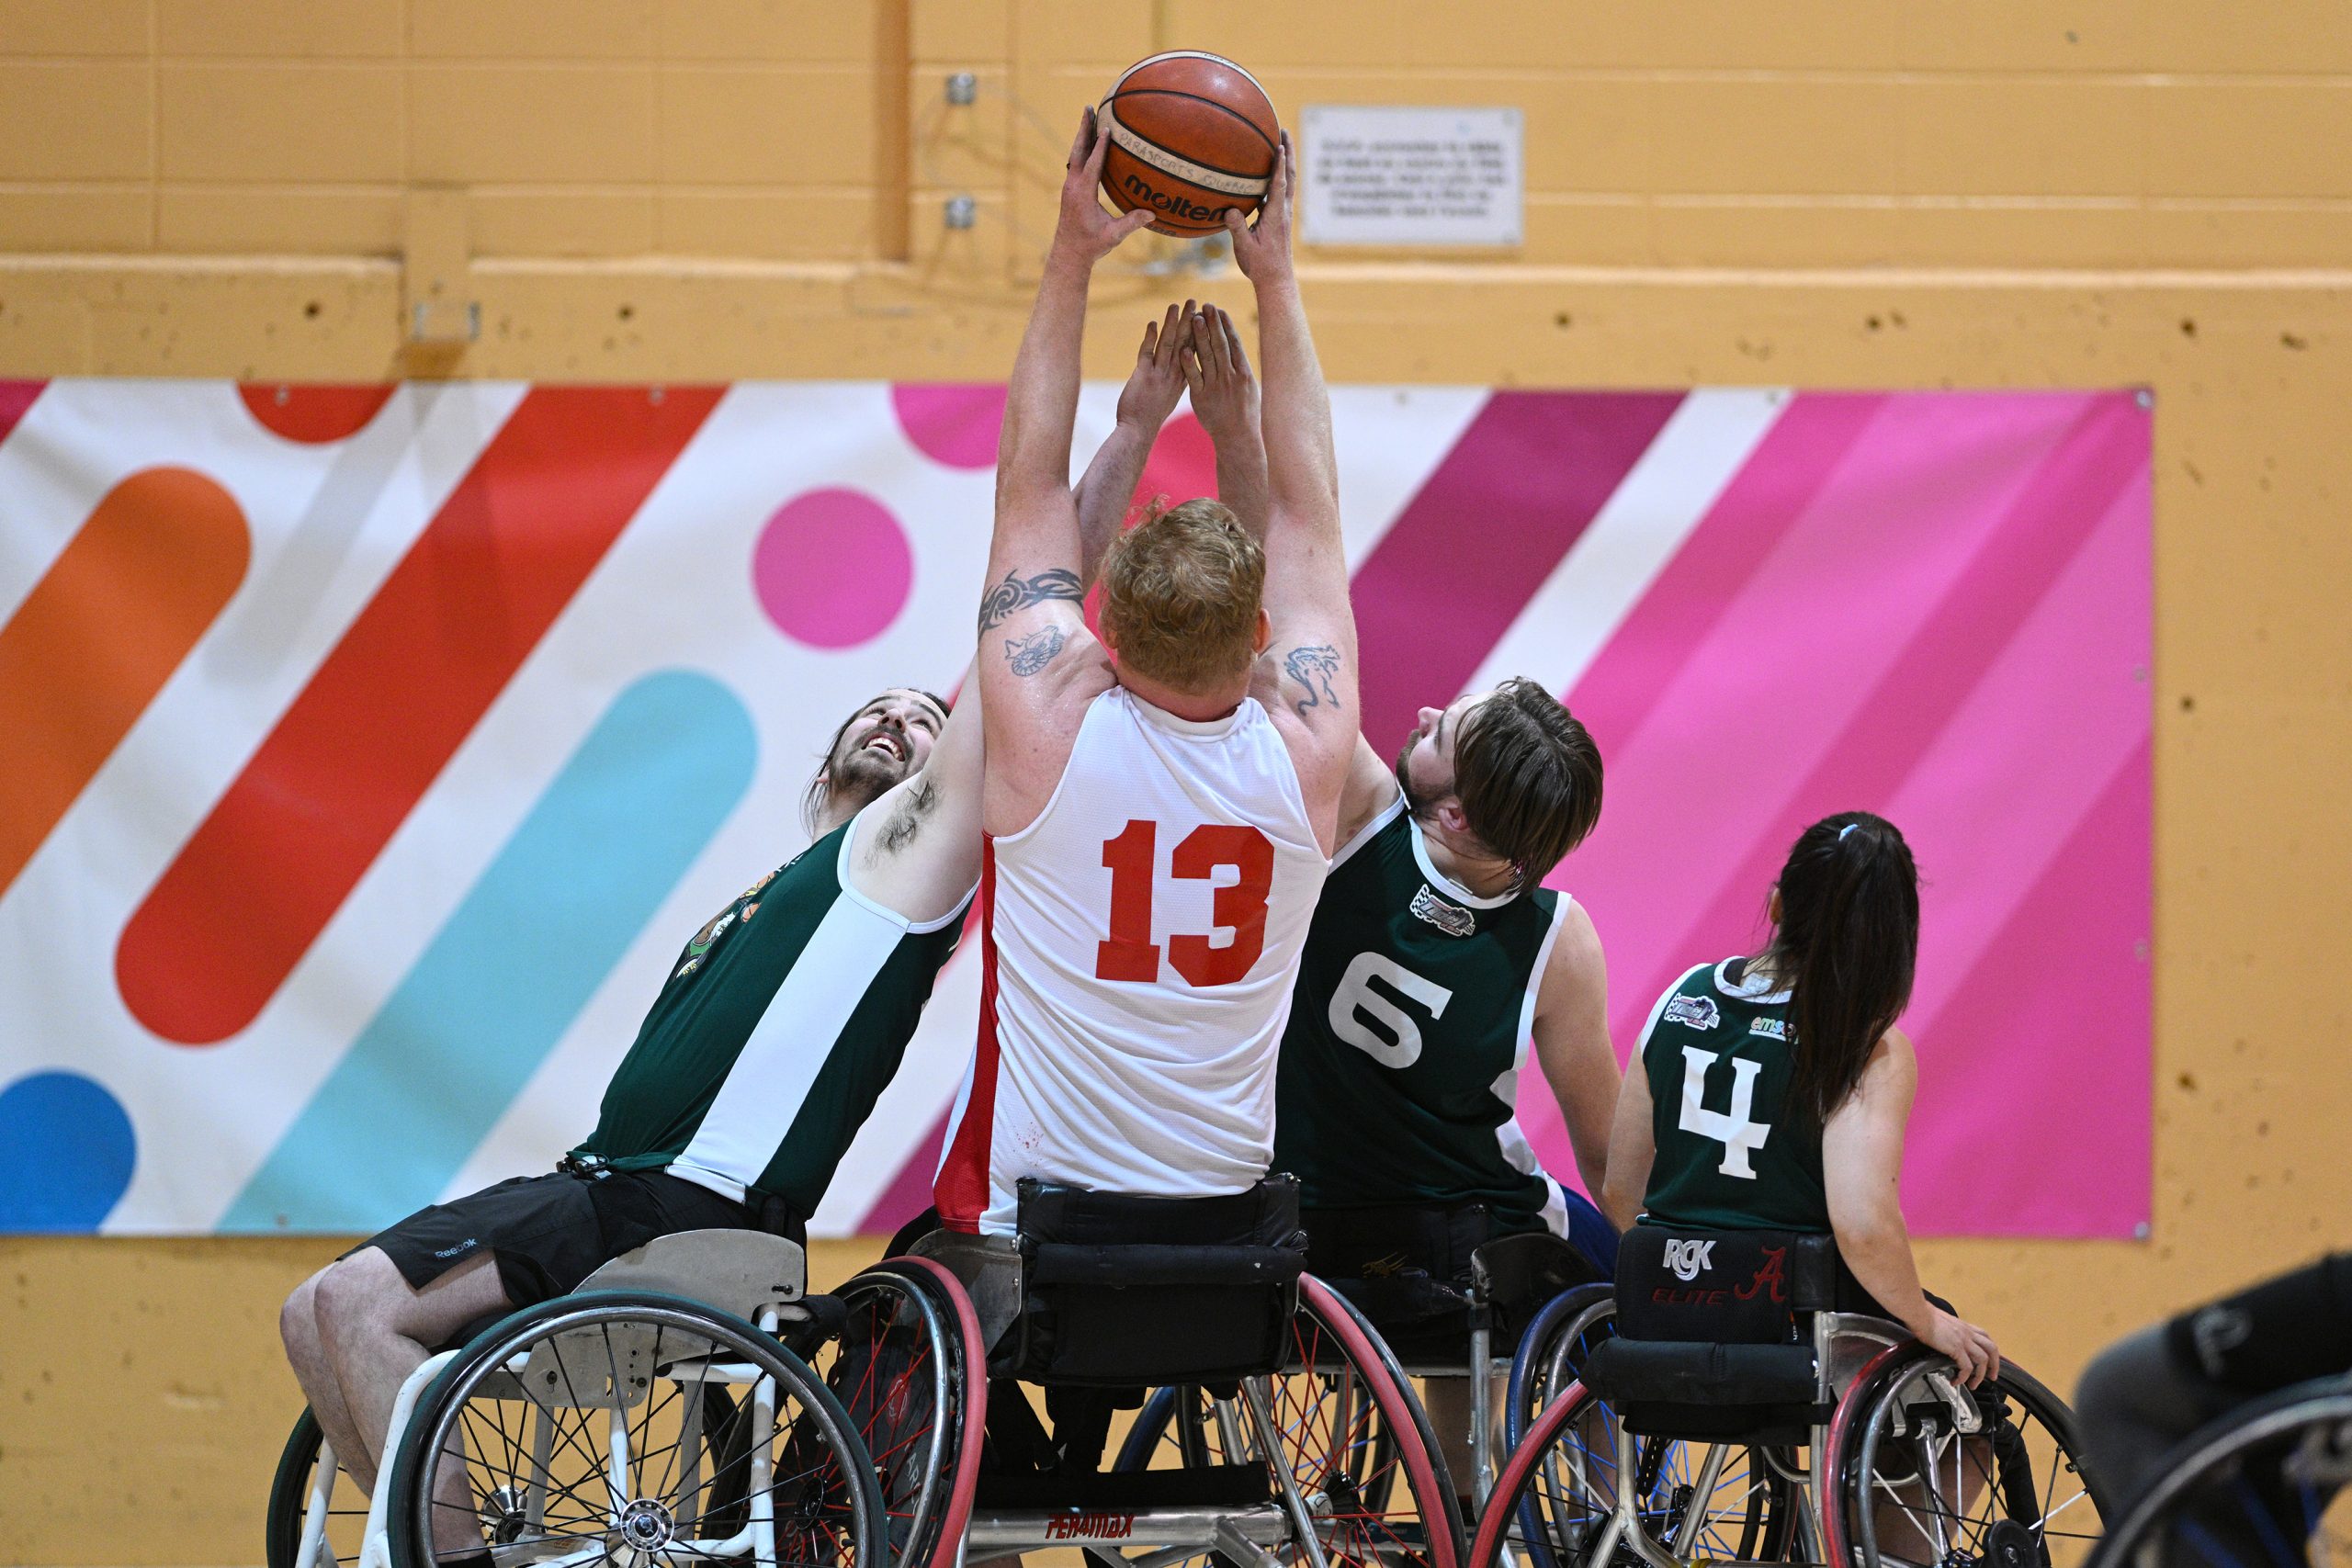 Un joueur de basket-ball en fauteuil roulant tient le ballon du bout de ses bras en haut de sa tête, alors que deux joueurs de l'équipe adverse tentent de lui enlever.